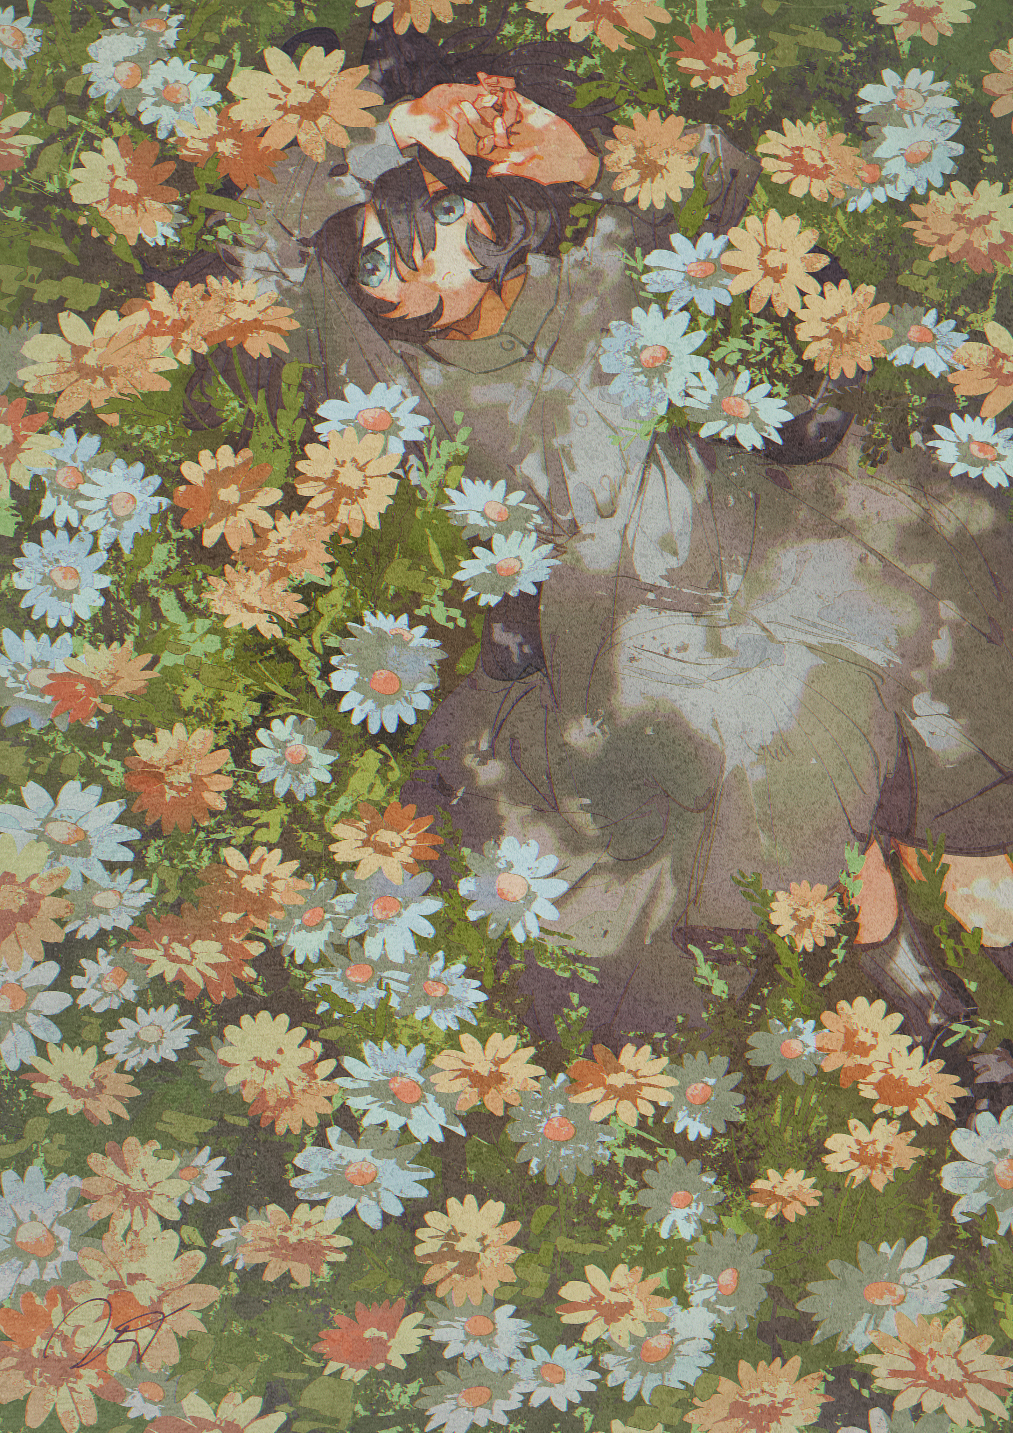 Фото Девочка лежит среди цветов, by potg